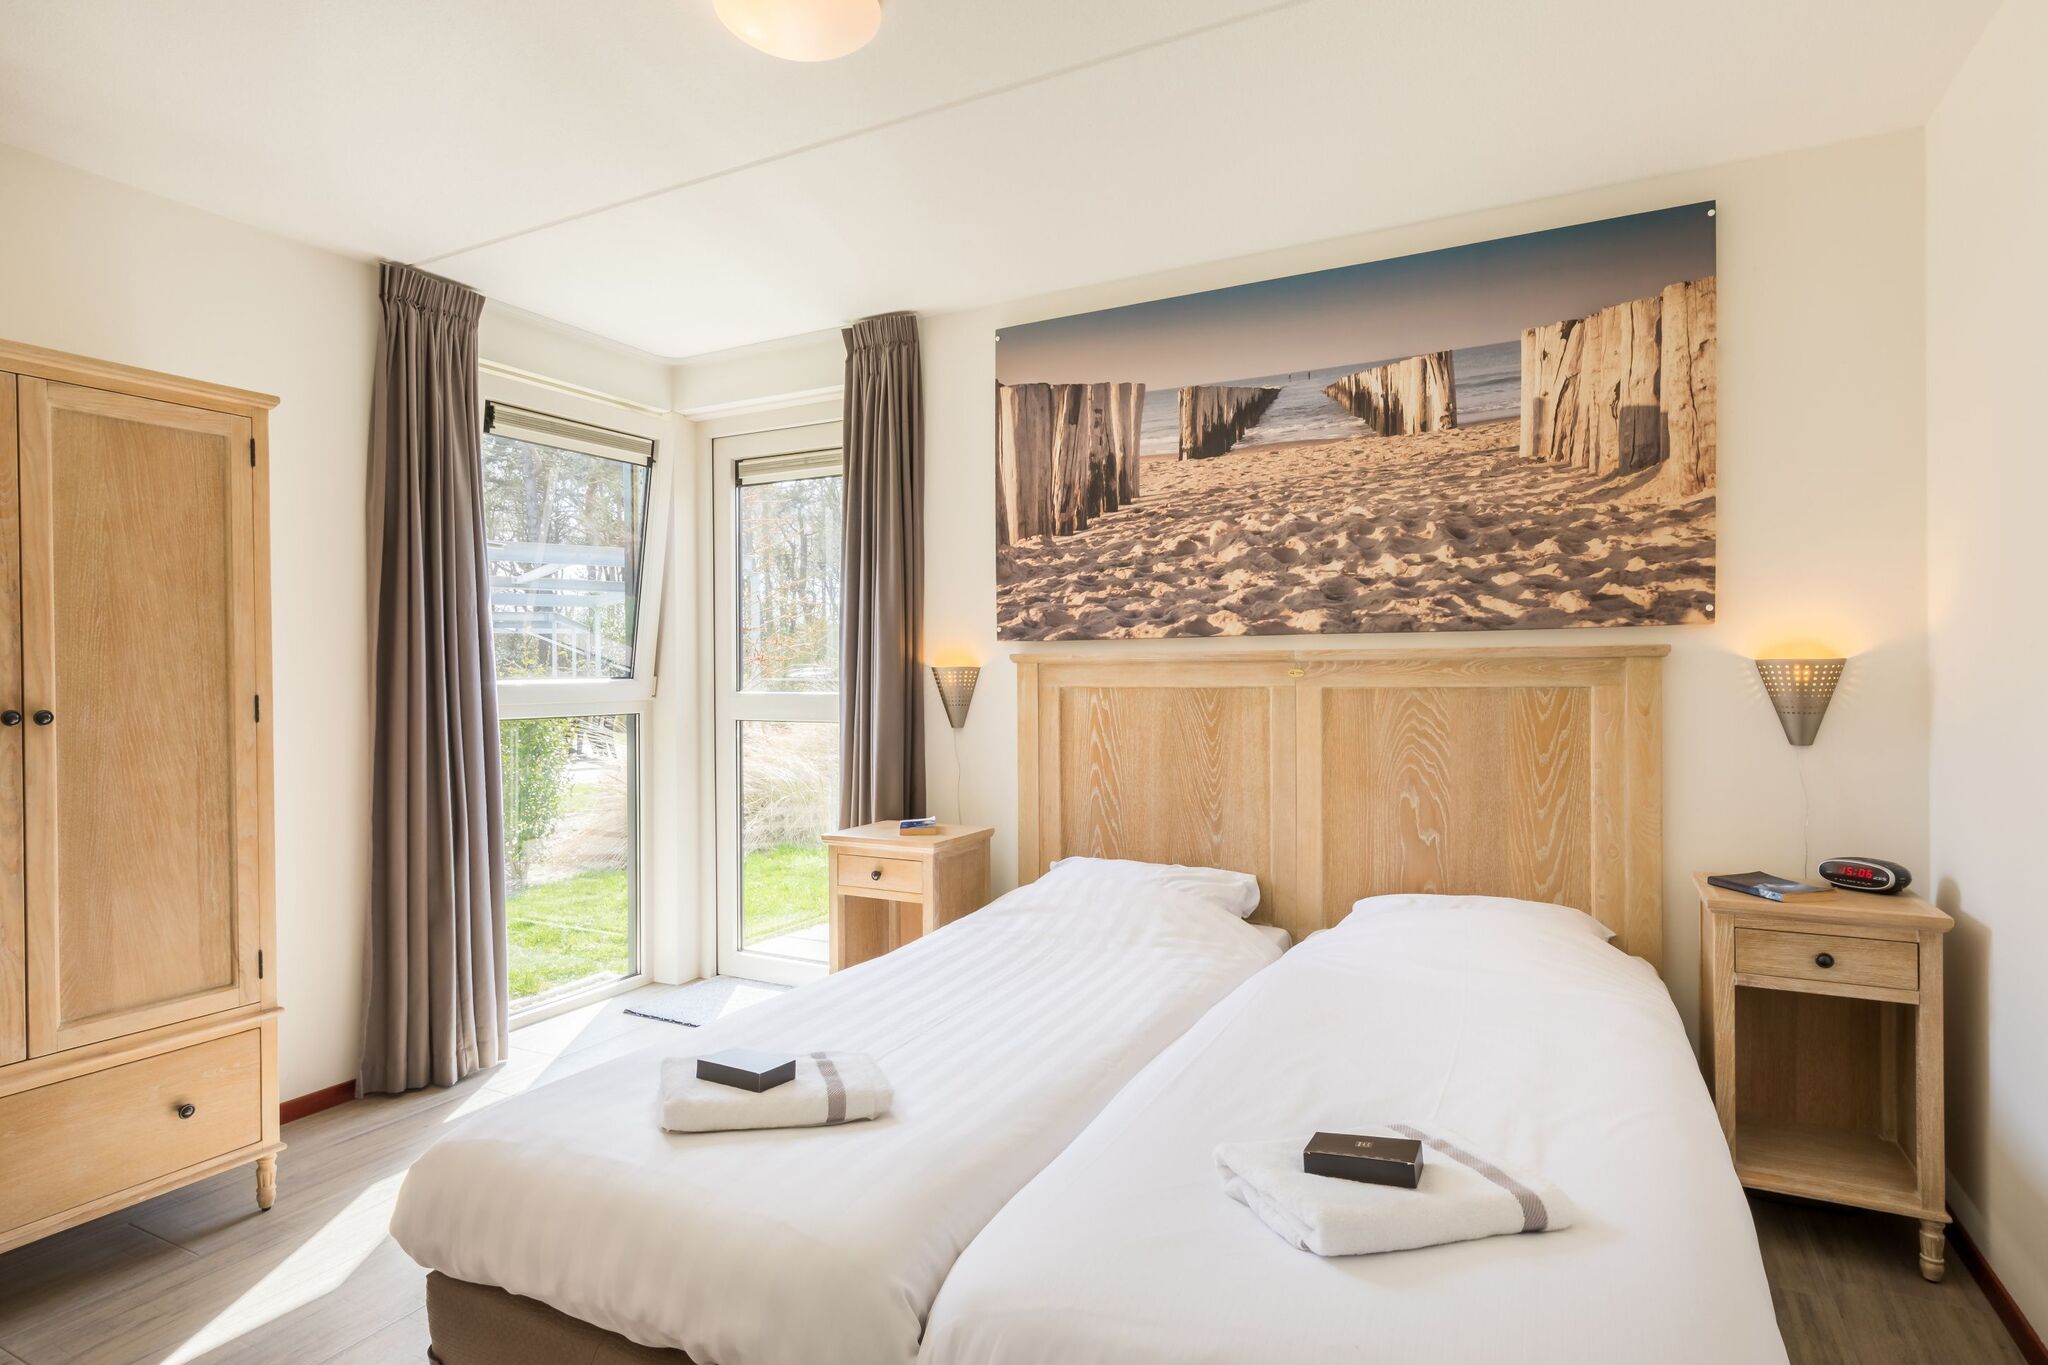 Luxe huis met twee badkamers, op Texel, zee op 2km